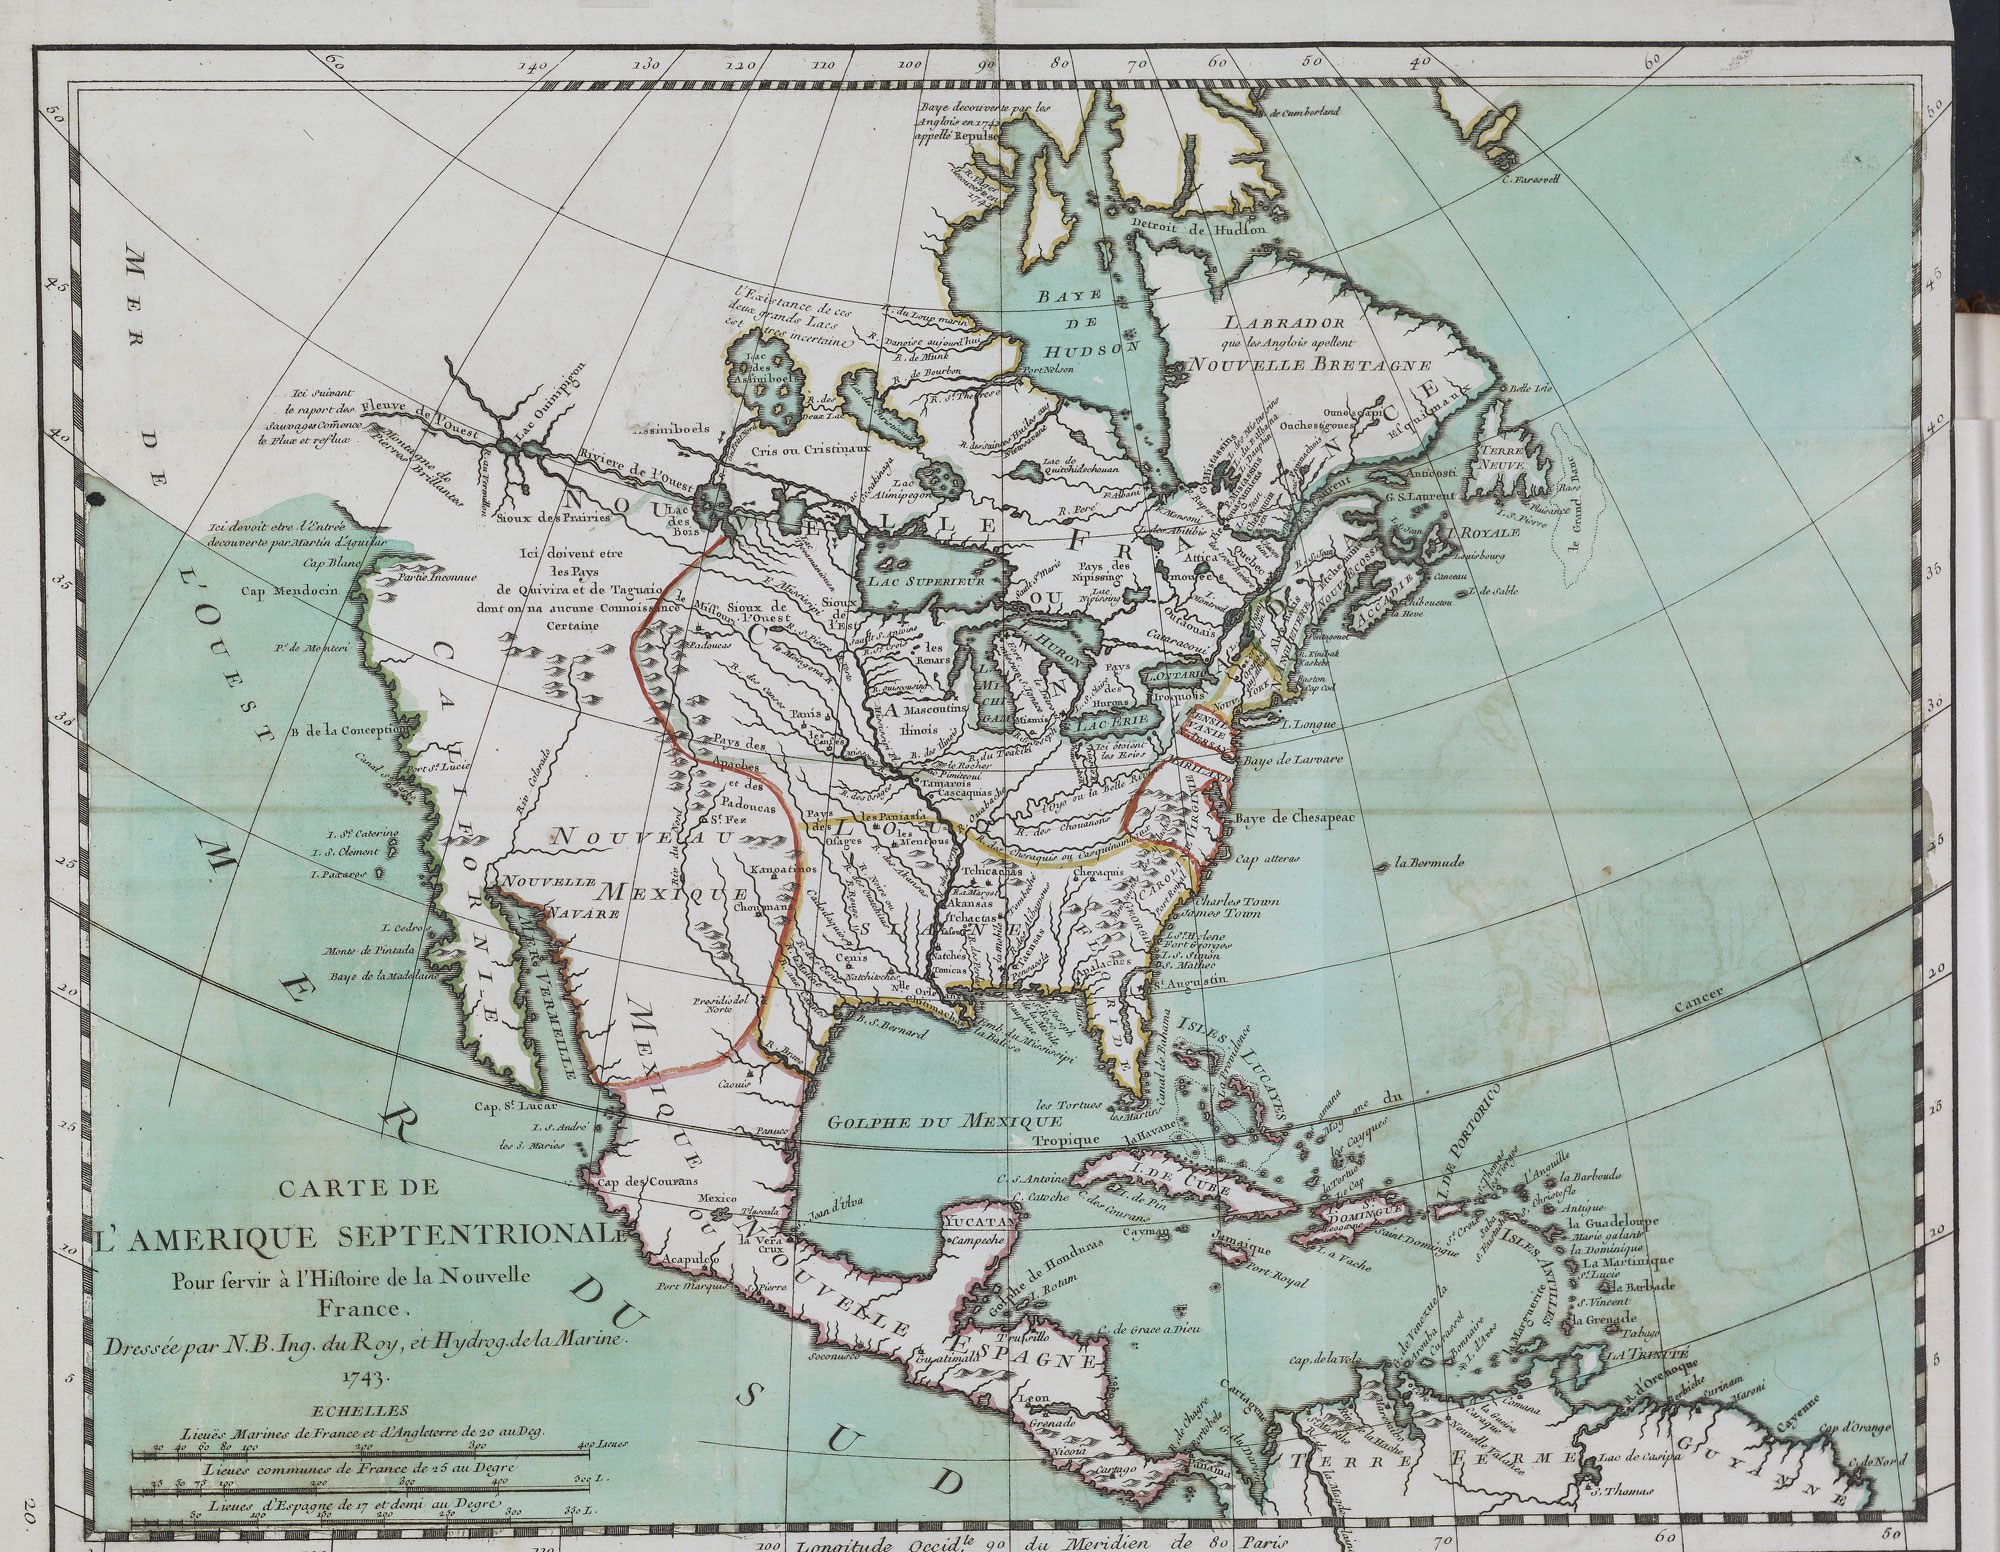 Carte topographique couvrant l'Amérique septentrionale.